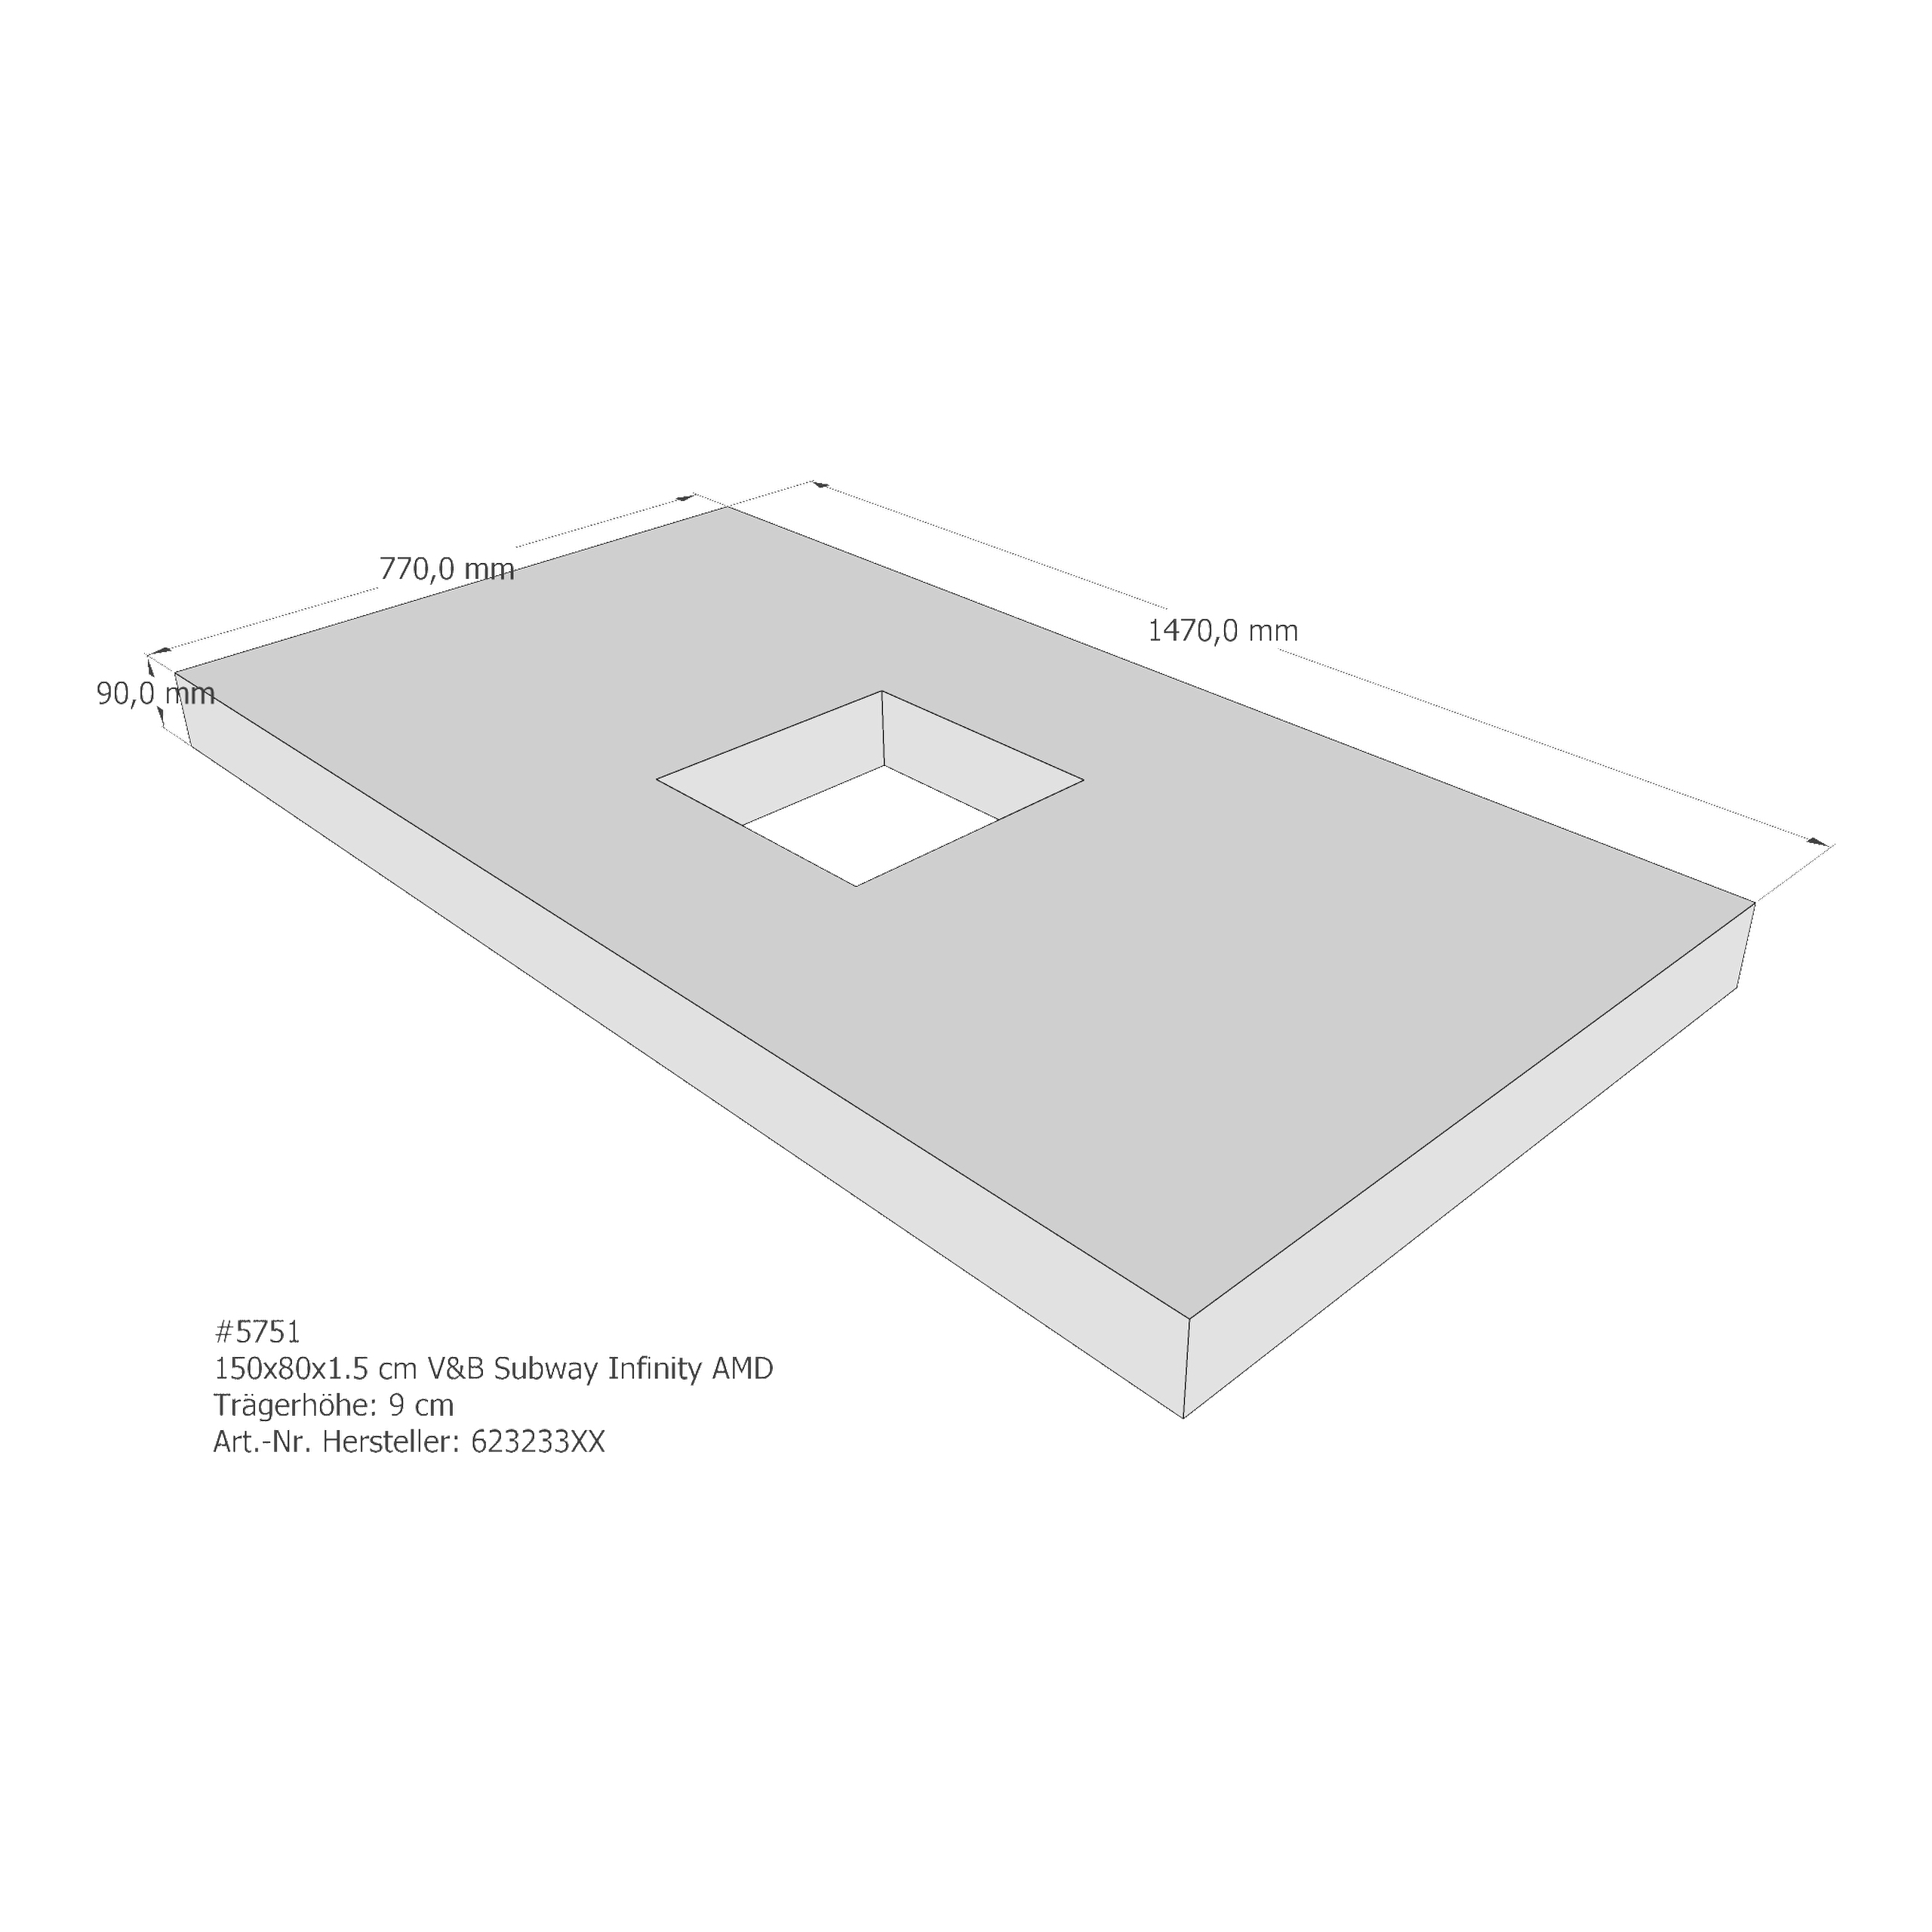 Duschwannenträger für Villeroy & Boch Subway Infinity 150 × 80 × 1,5 cm